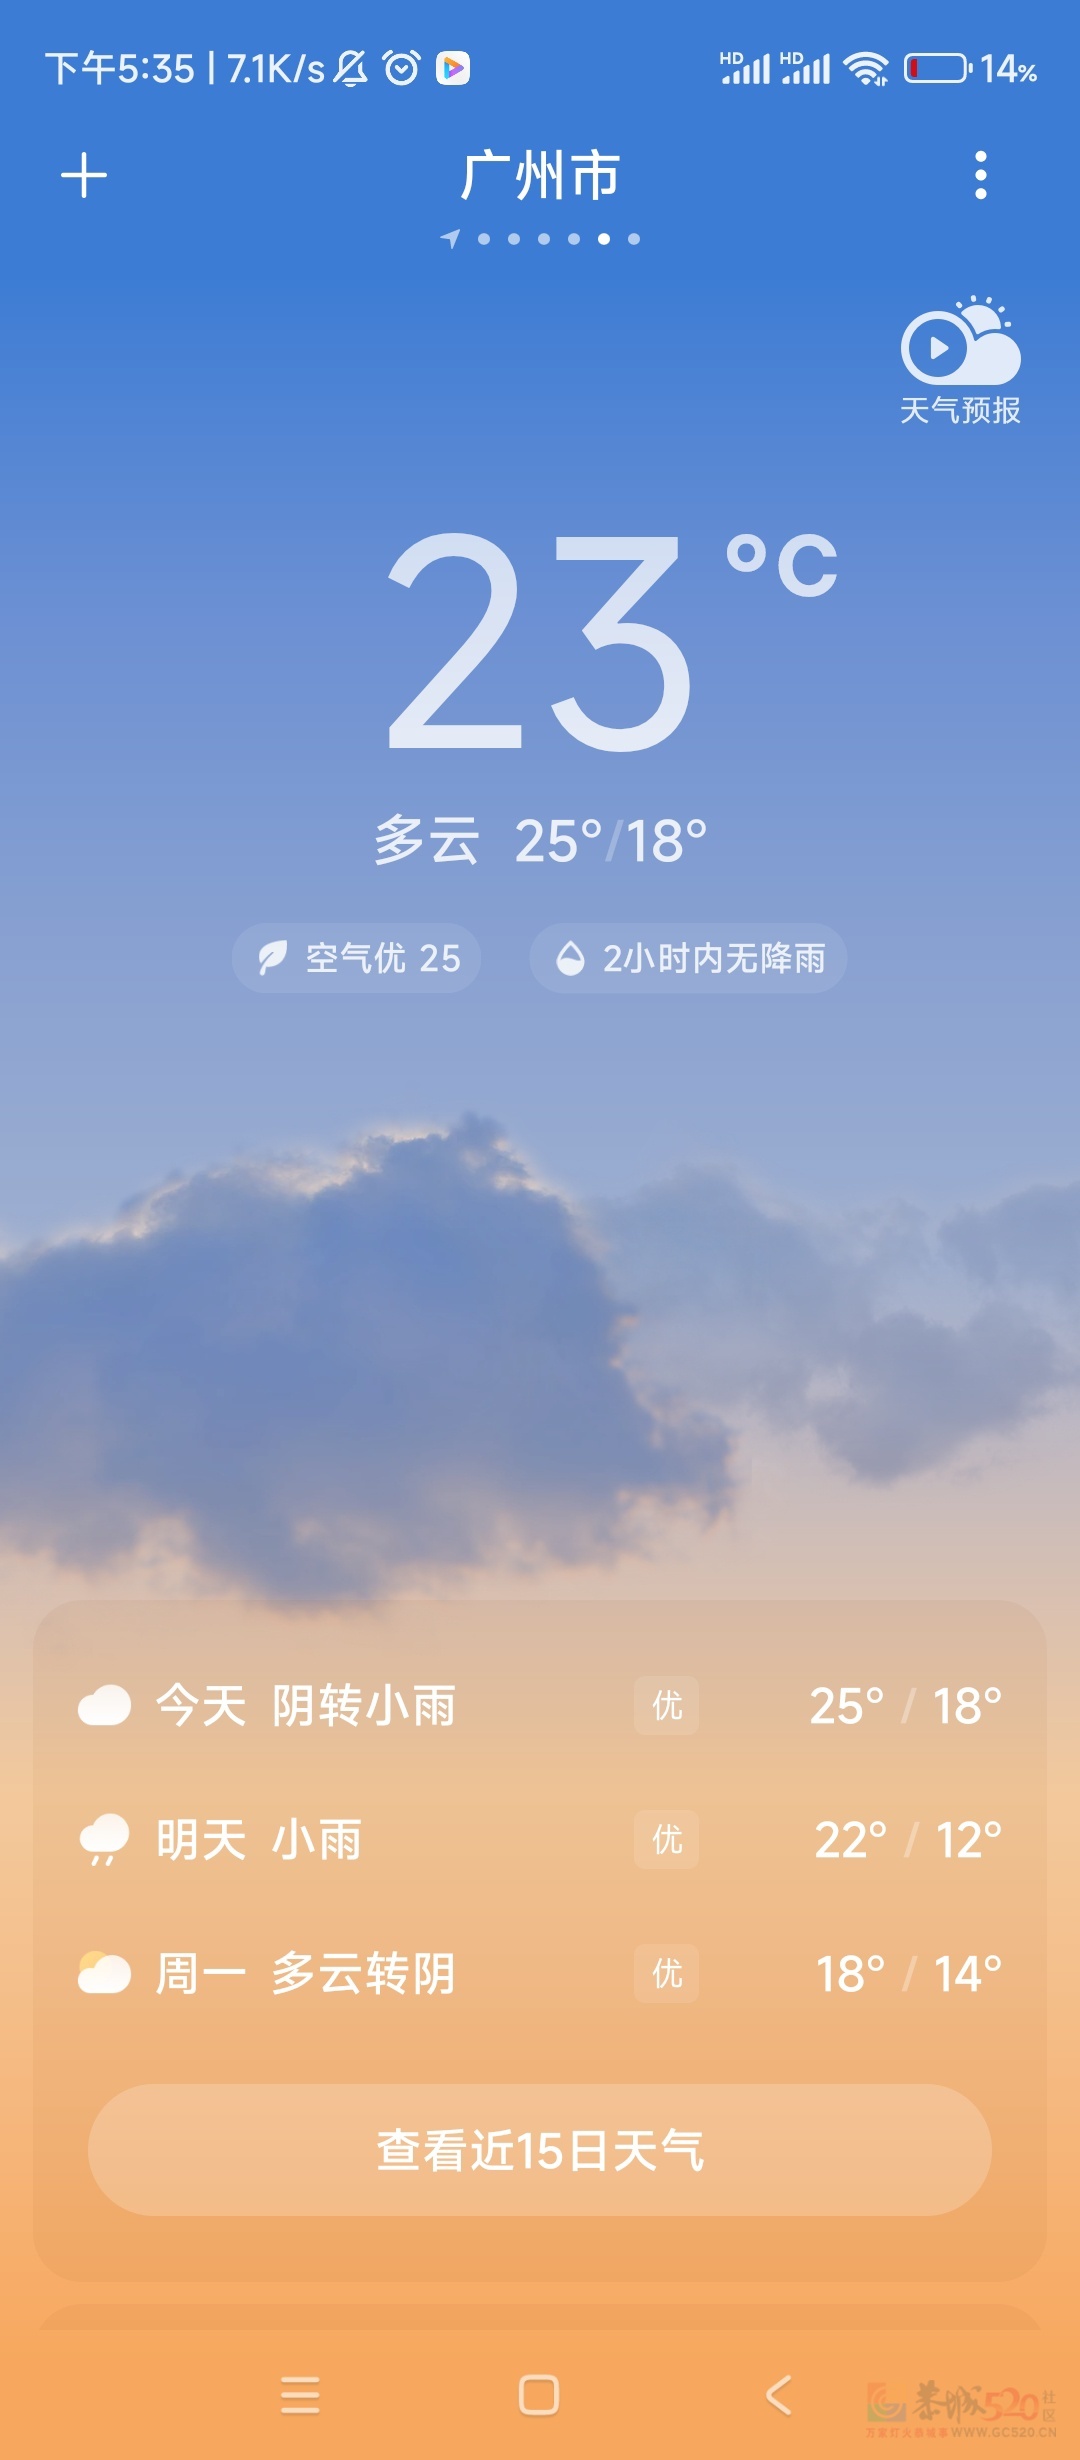 太冷了，还没有回家的都不要回来了。
 
刚从广东回来。马上要回广东了，这个太冷了754 / 作者:太冷了 / 帖子ID:313468